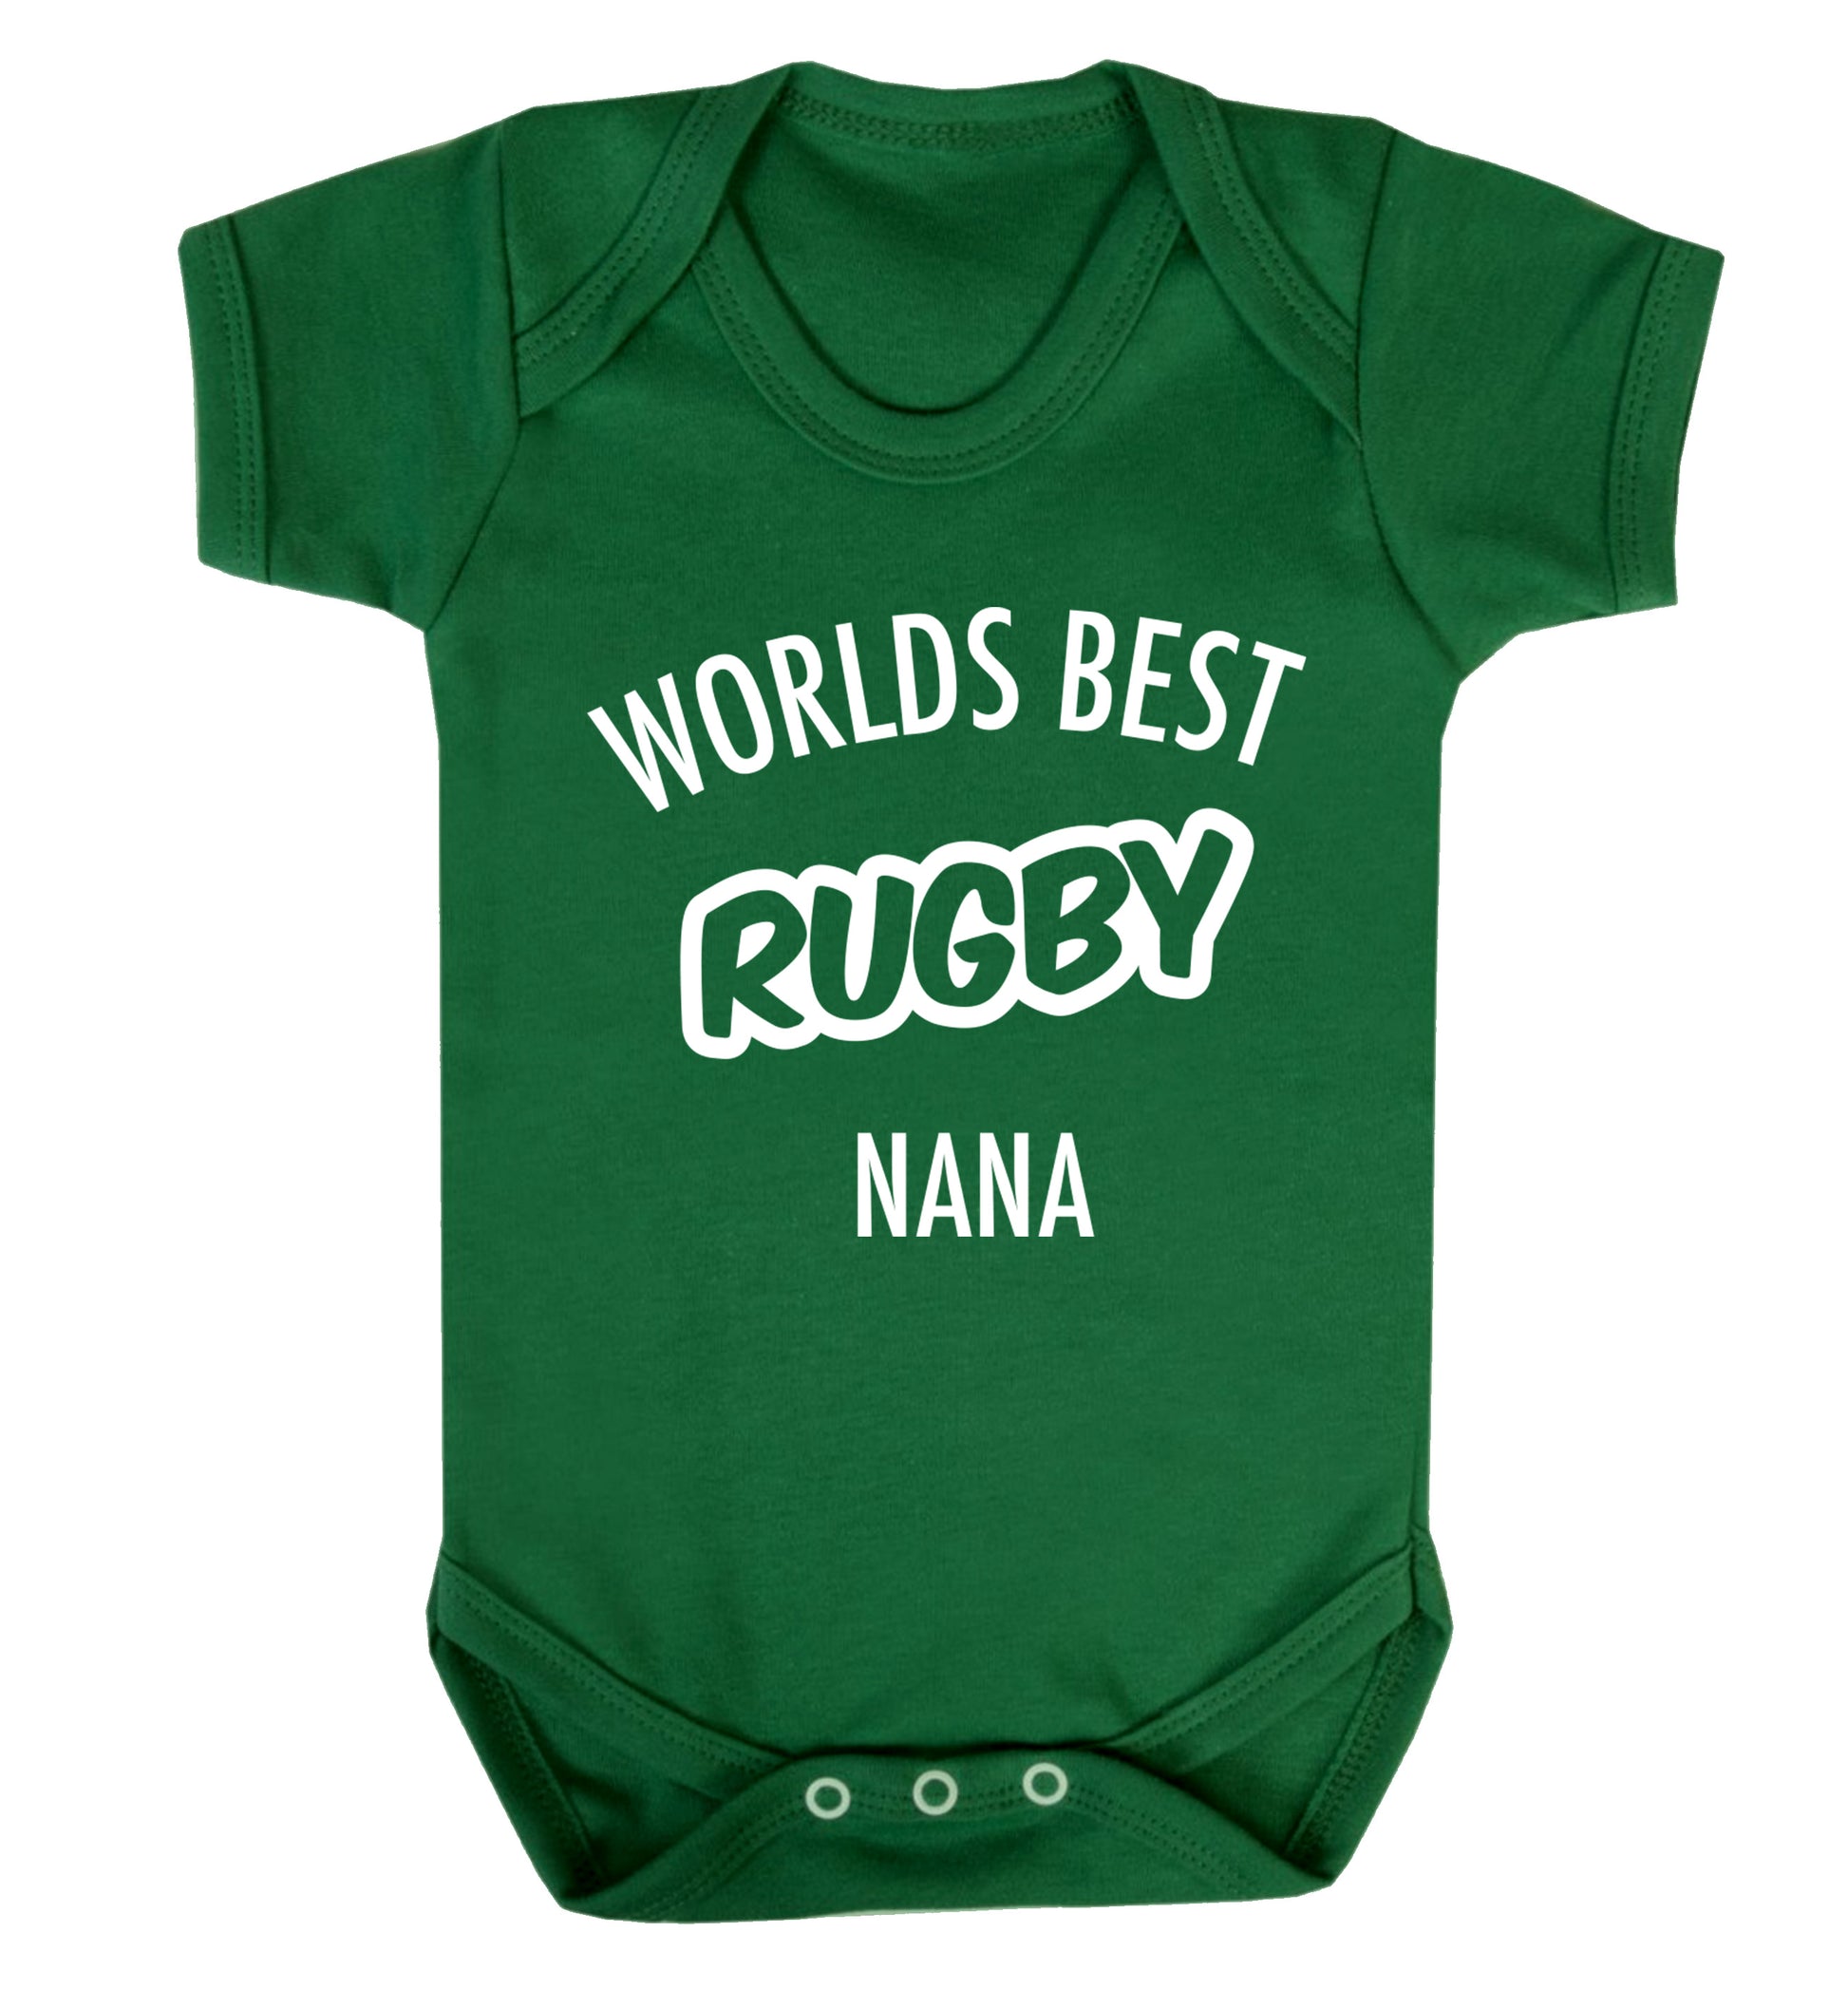 Worlds Best Rugby Grandma Baby Vest green 18-24 months